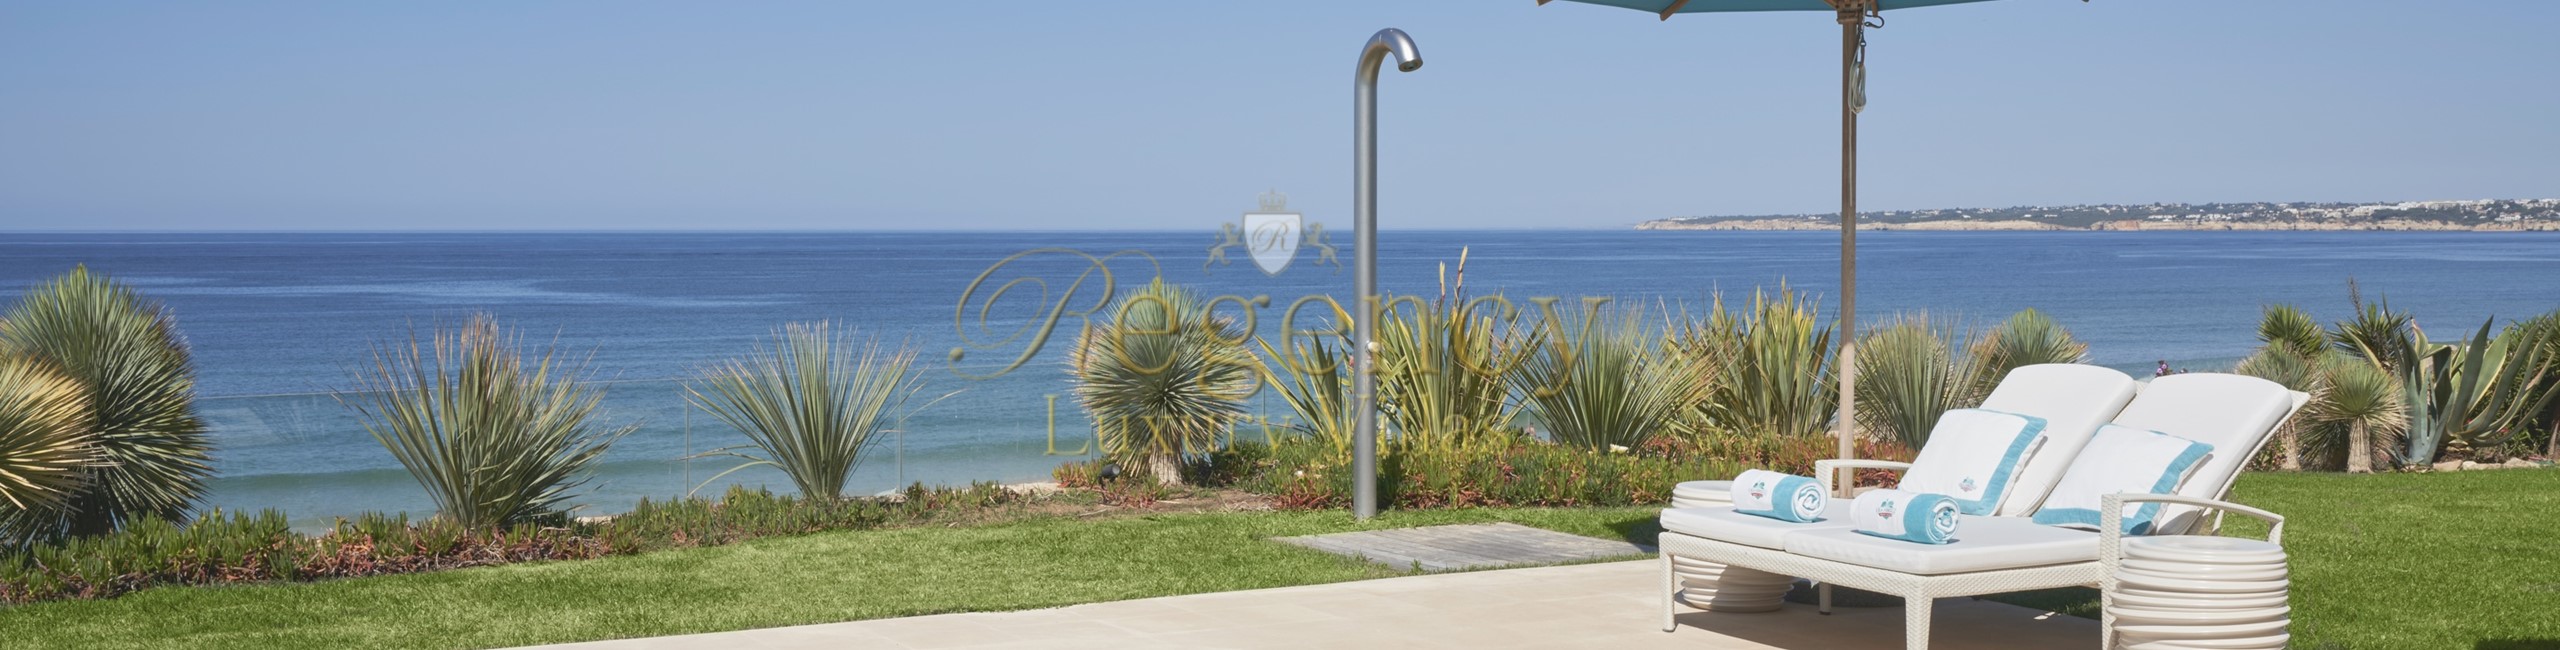 Luxury Beachfront Villa To Rent In The Algarve 05